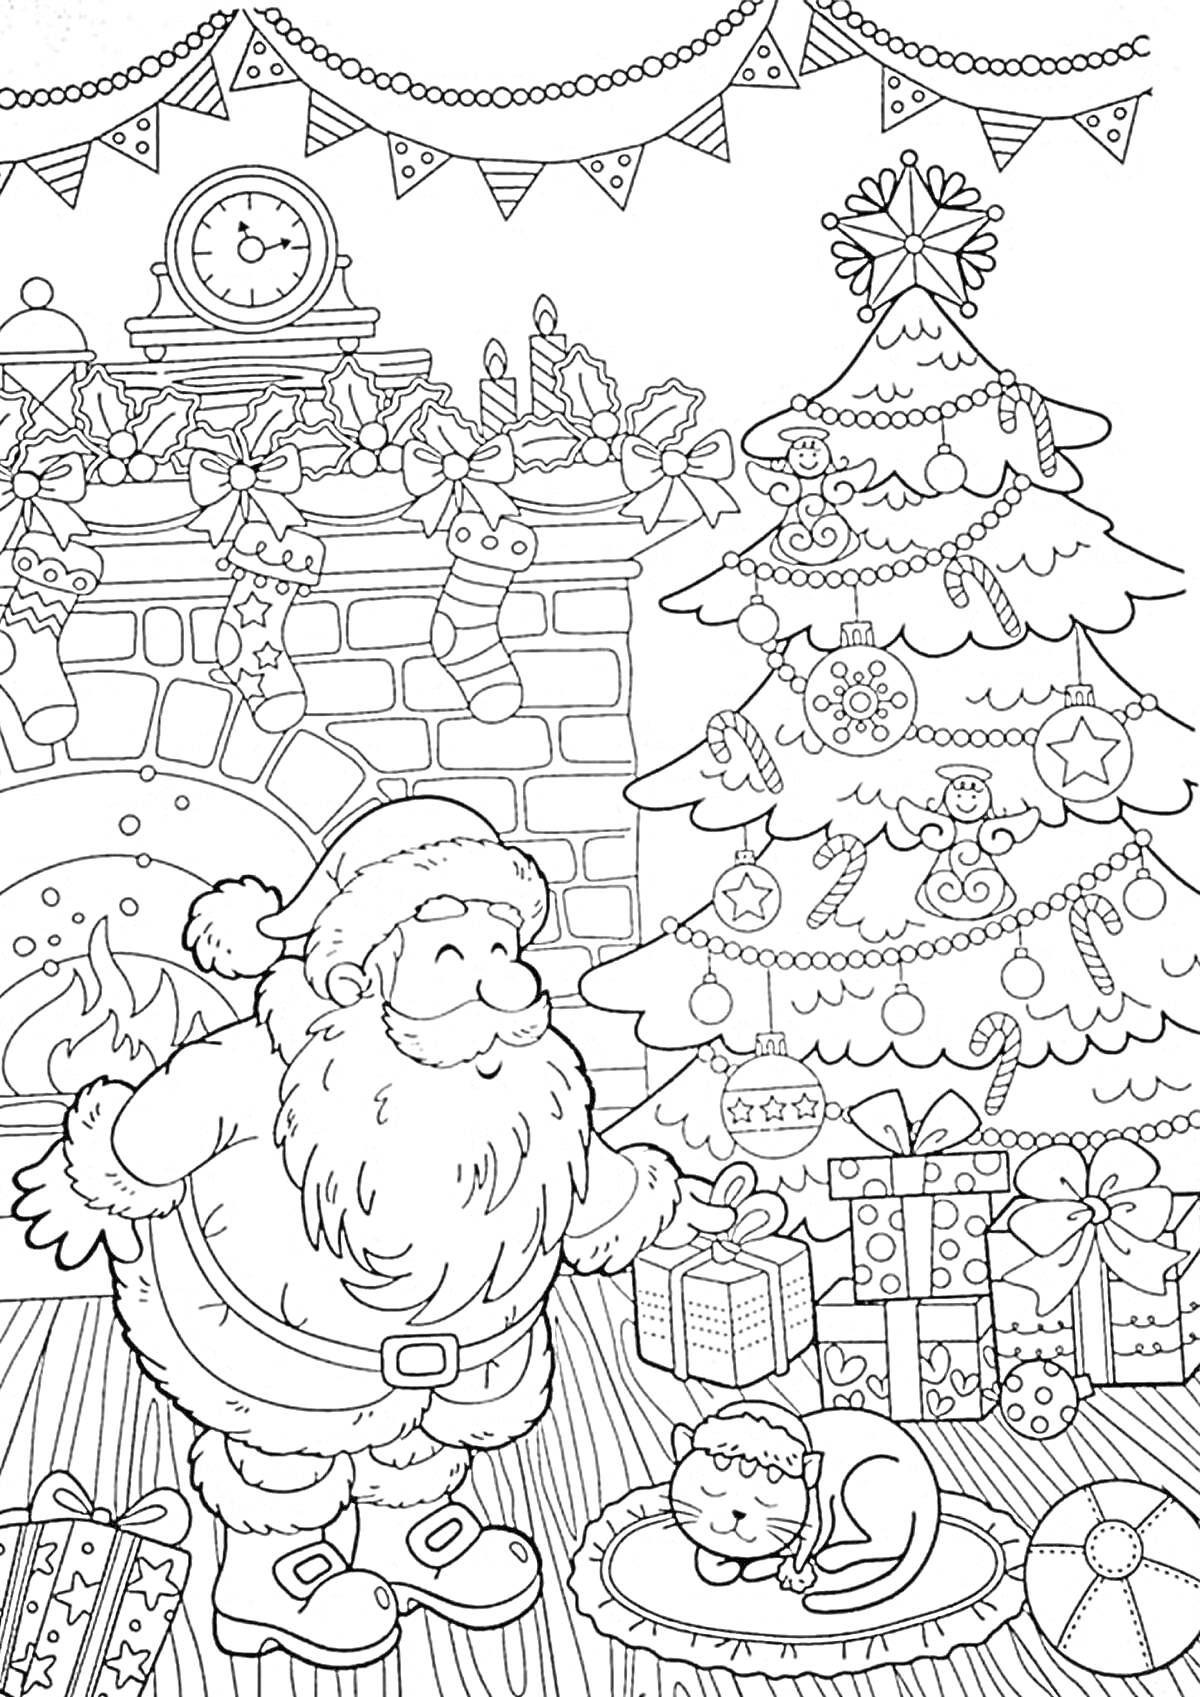 На раскраске изображено: Подарки, Камин, Часы, Новый год, Санта Клаус, Гирлянда, Елки, Кот, Праздники